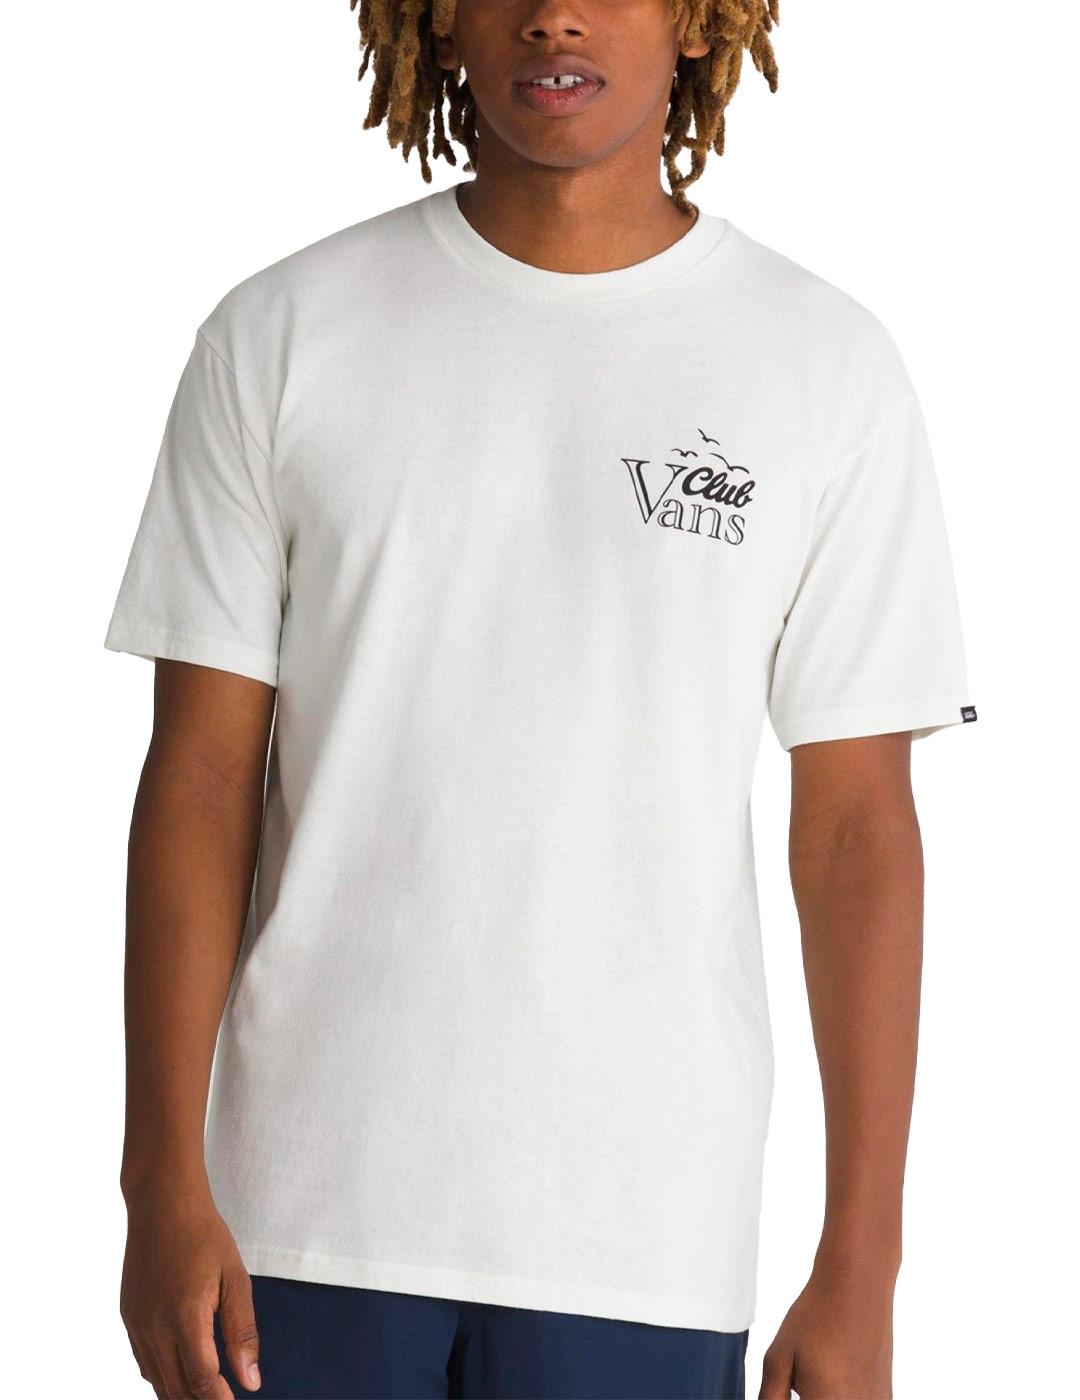 Camiseta Vans Club Vee Beis